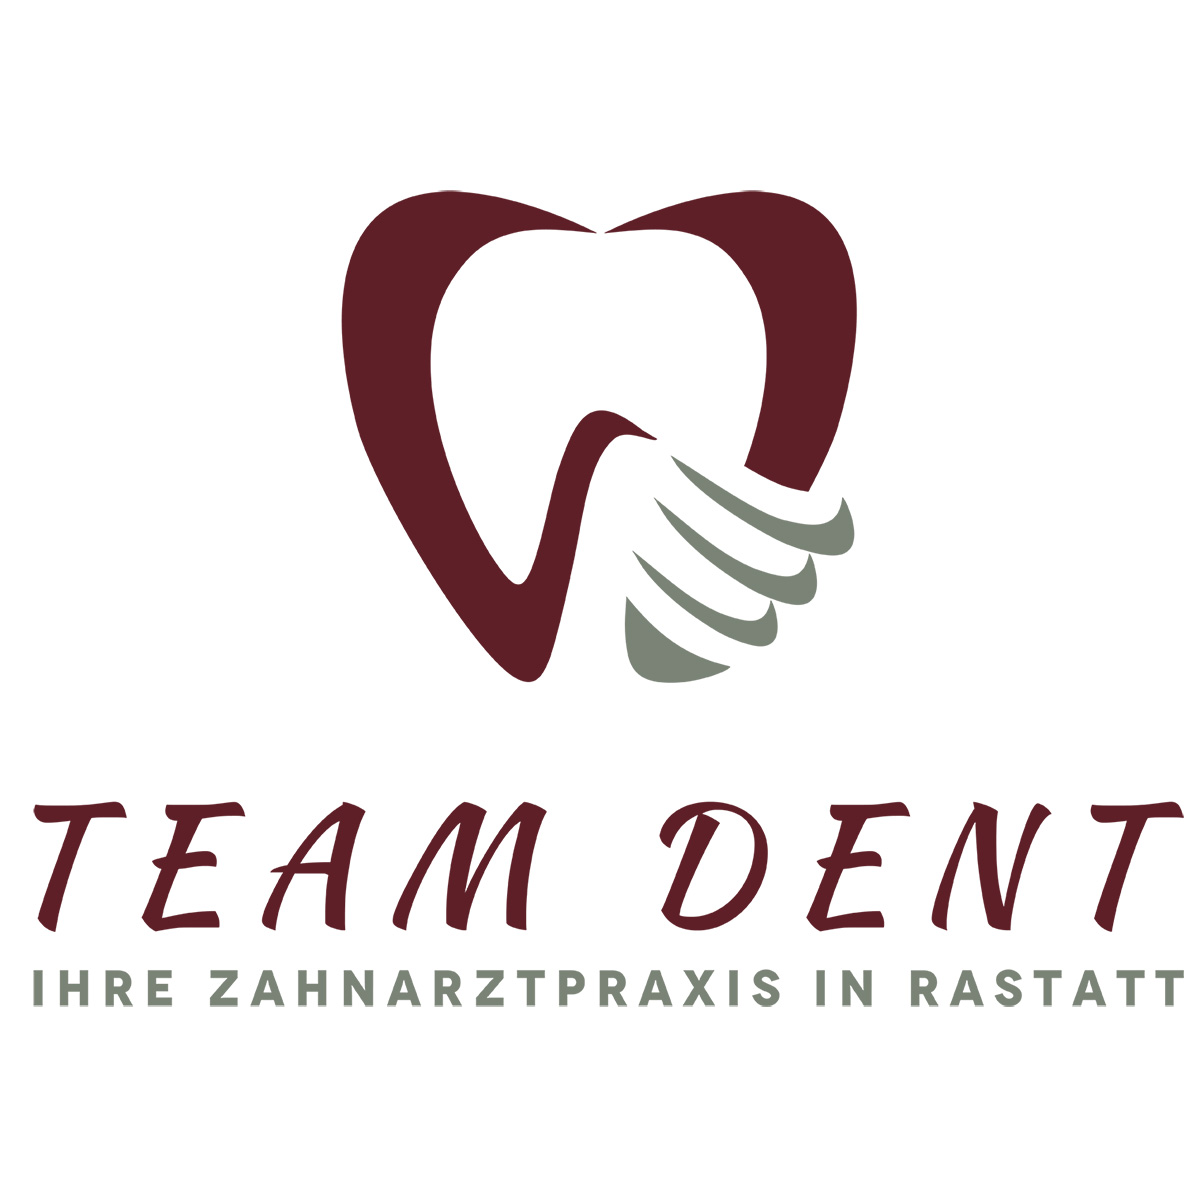 Kundenbild groß 5 Zahnarztpraxis Rastatt TEAM DENT